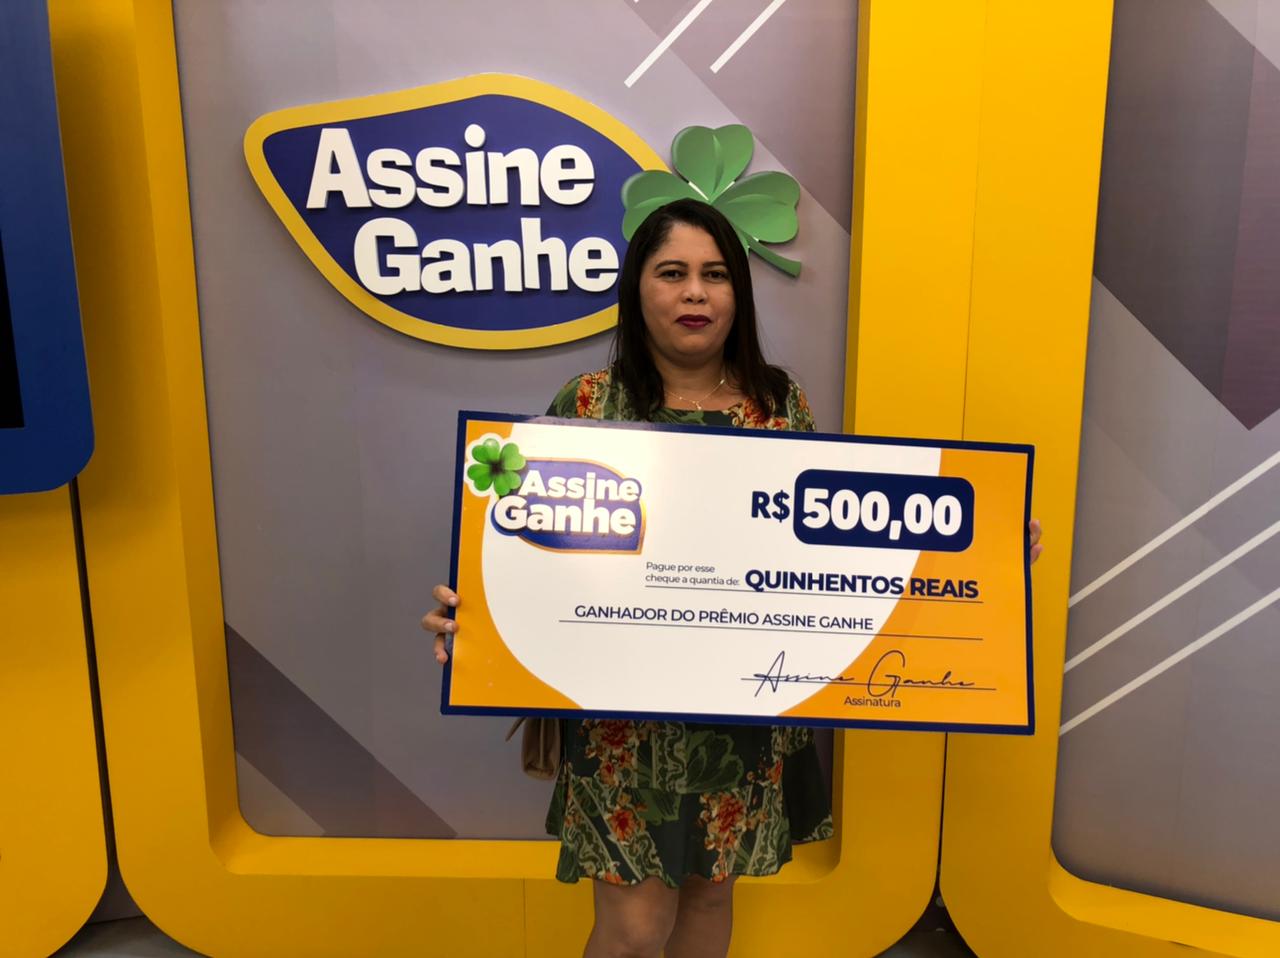 Assine Ganhe: Autônoma recebe prêmio de R$ 500 no GMNC - Imagem 1